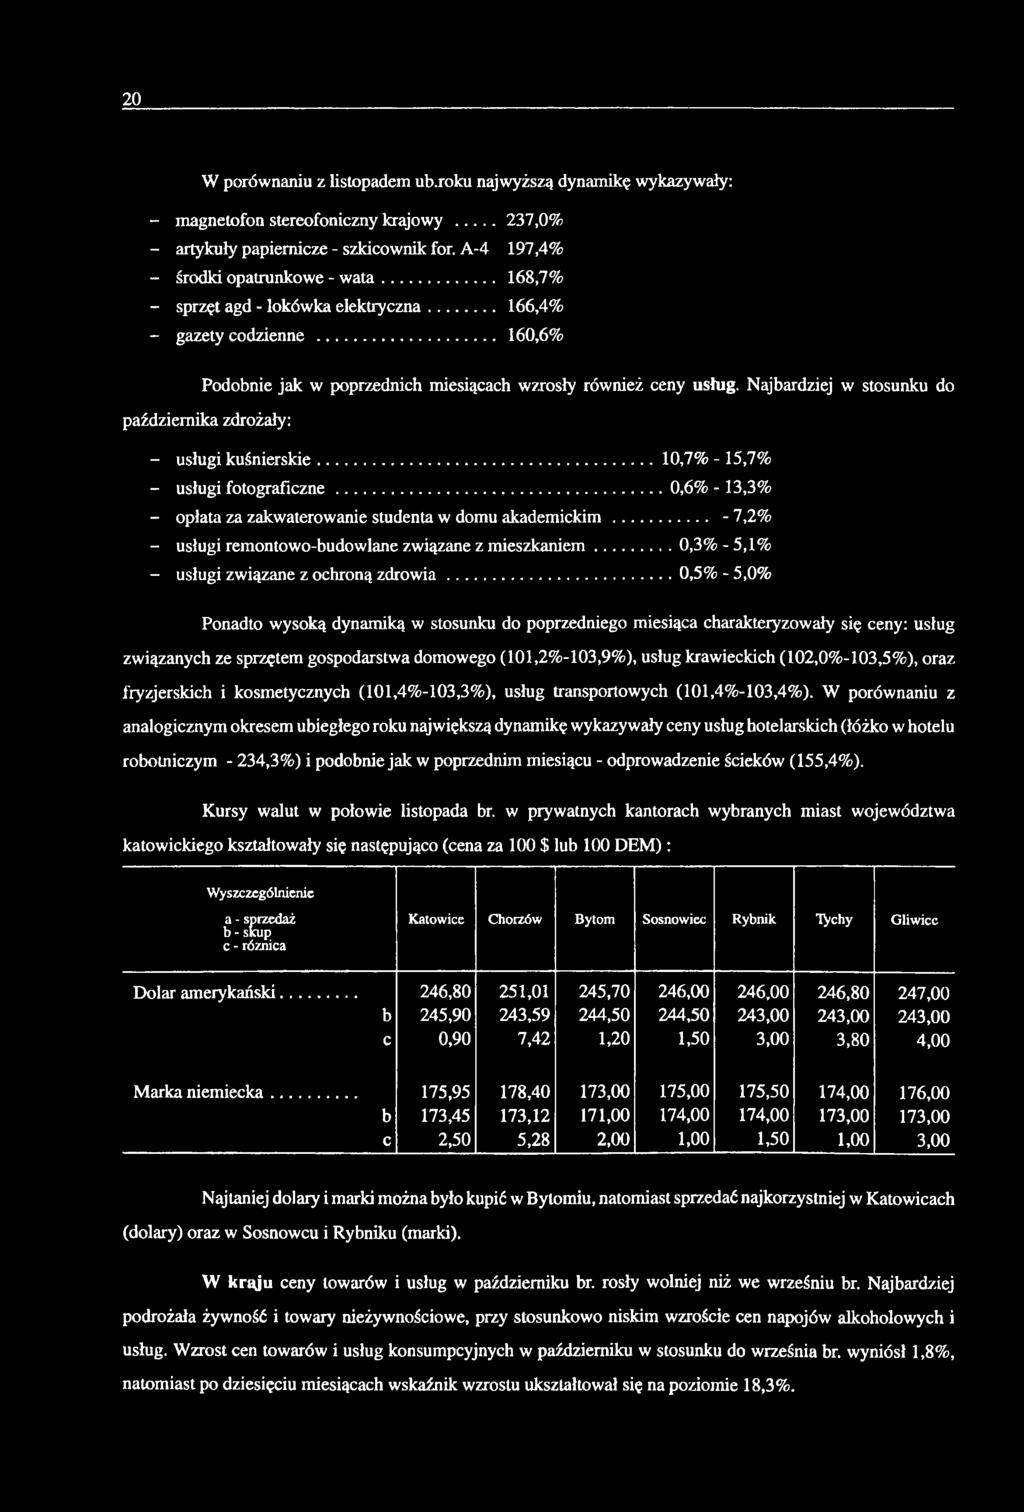 Njrdziej w stosunku do pździernik zdrożły: - usługi kuśnierskie... 10,7% - 15,7% - usługi fotogrficzne...0,6% - 13,3% - opłt z zkwterownie student w domu kdem ickim.